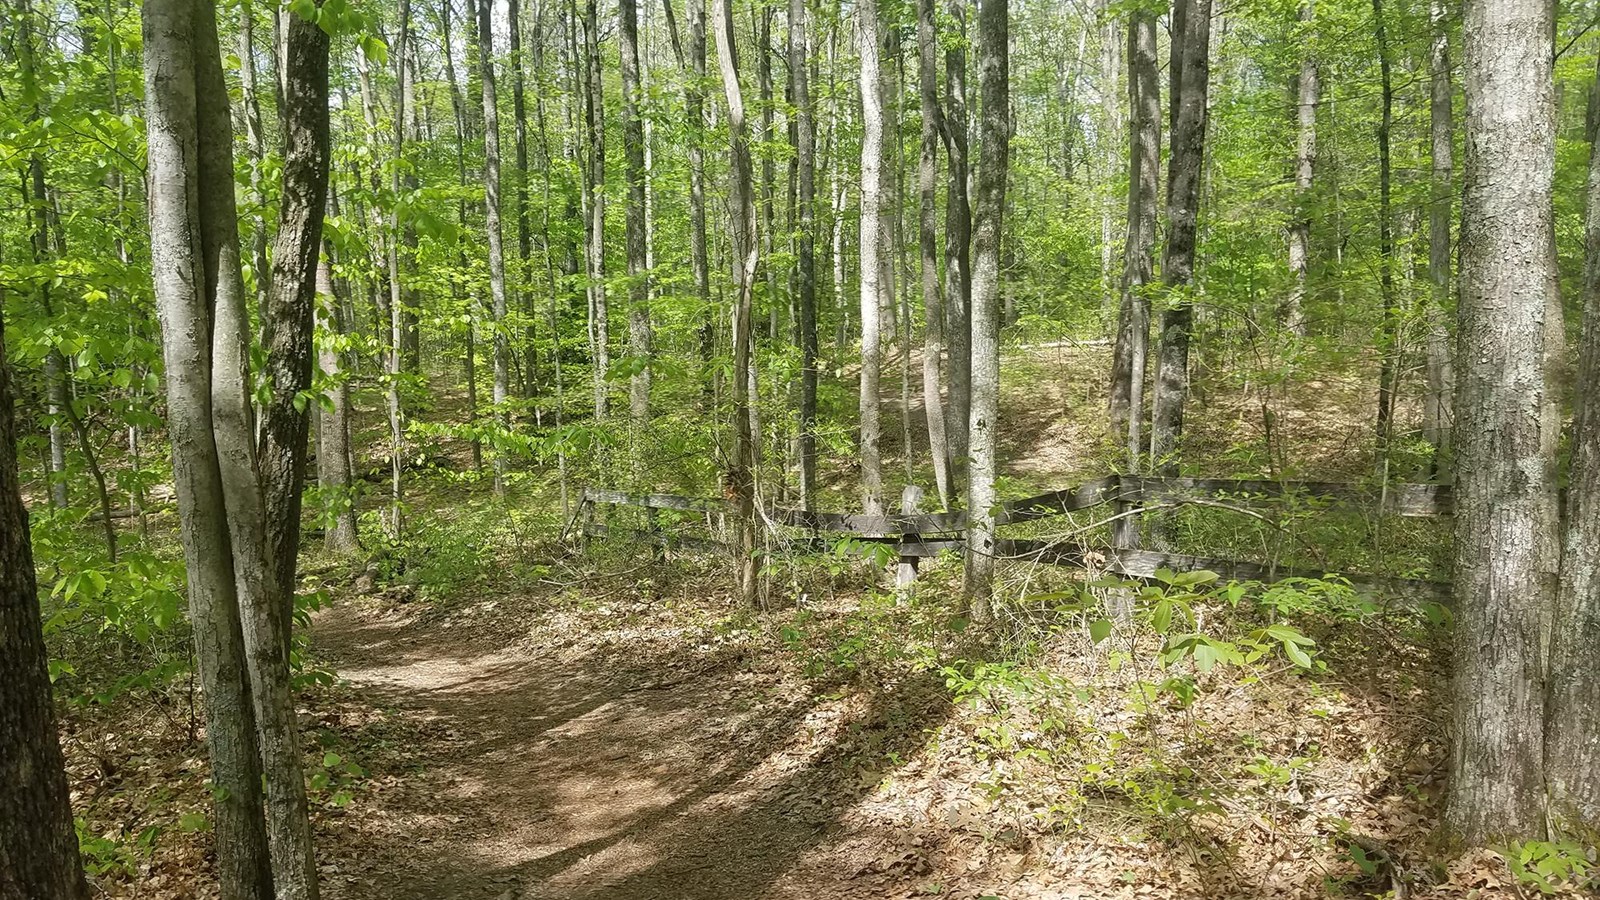 A trail through forest